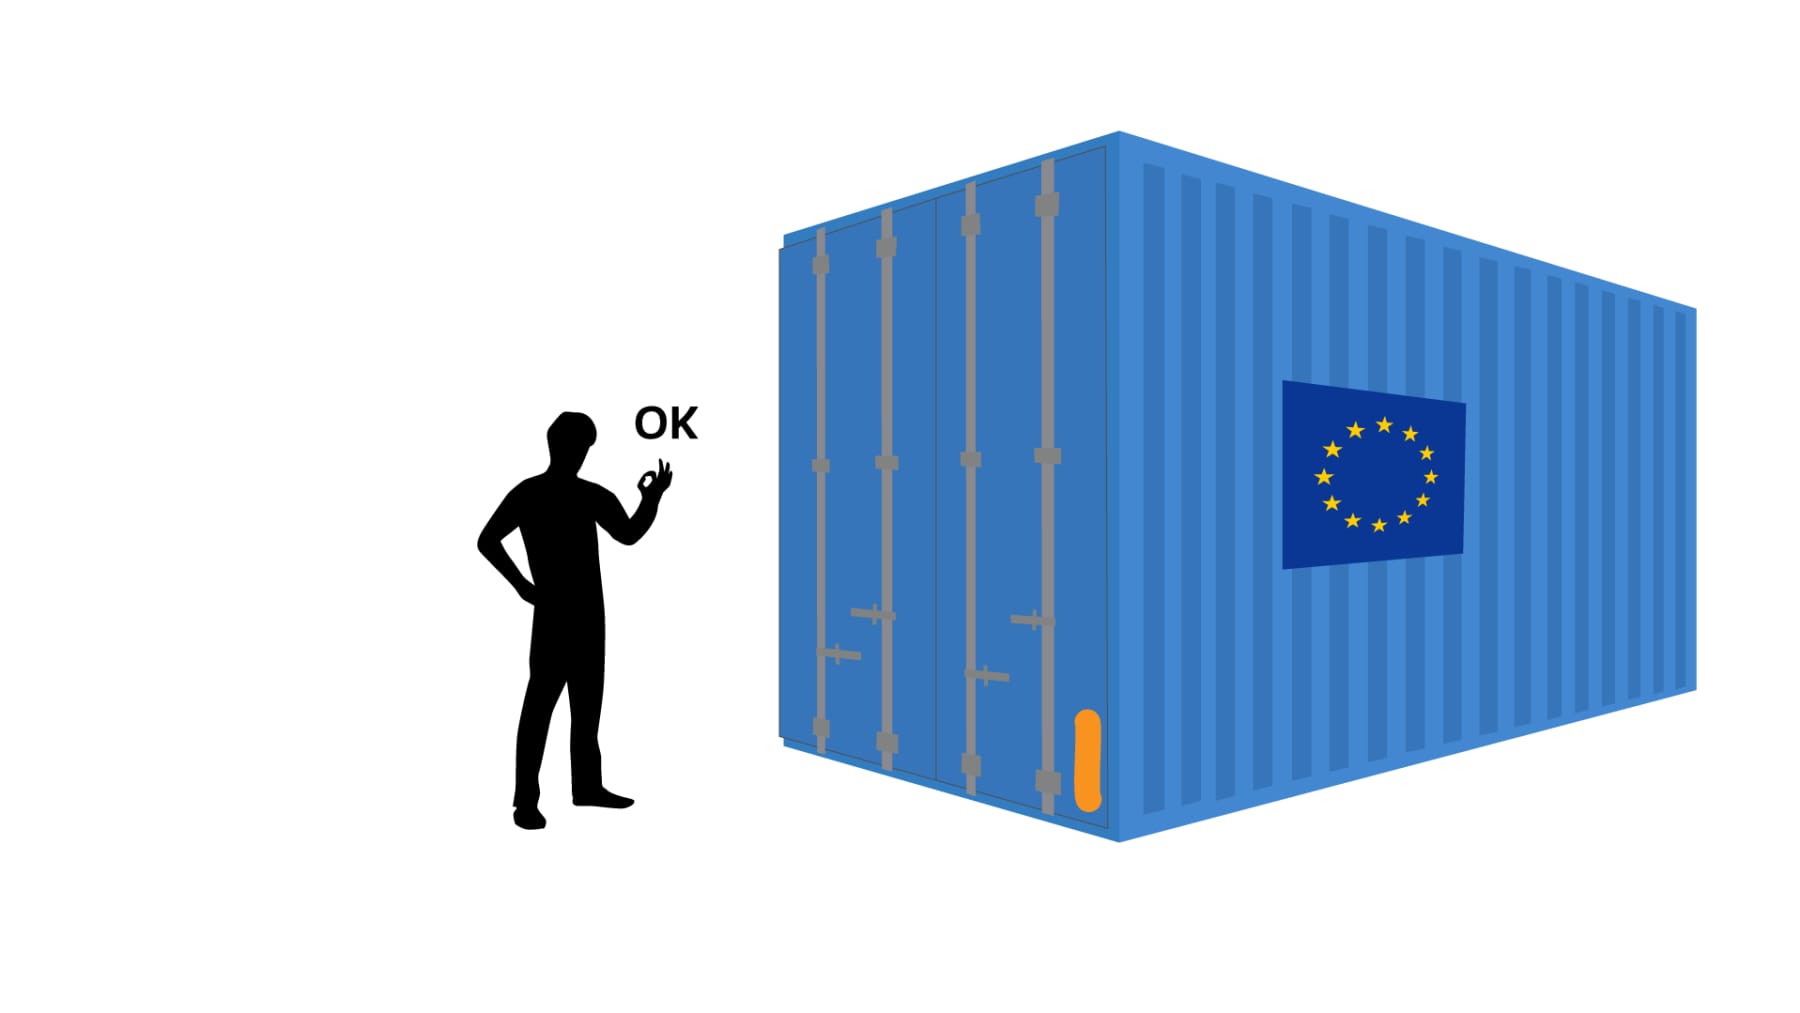 Piirros: Kontti, jossa ovat ovet kiinni. Kontin kyljessä on EU-lippu. Henkilö seisoo kontin vieressä ja näyttää OK merkkiä.